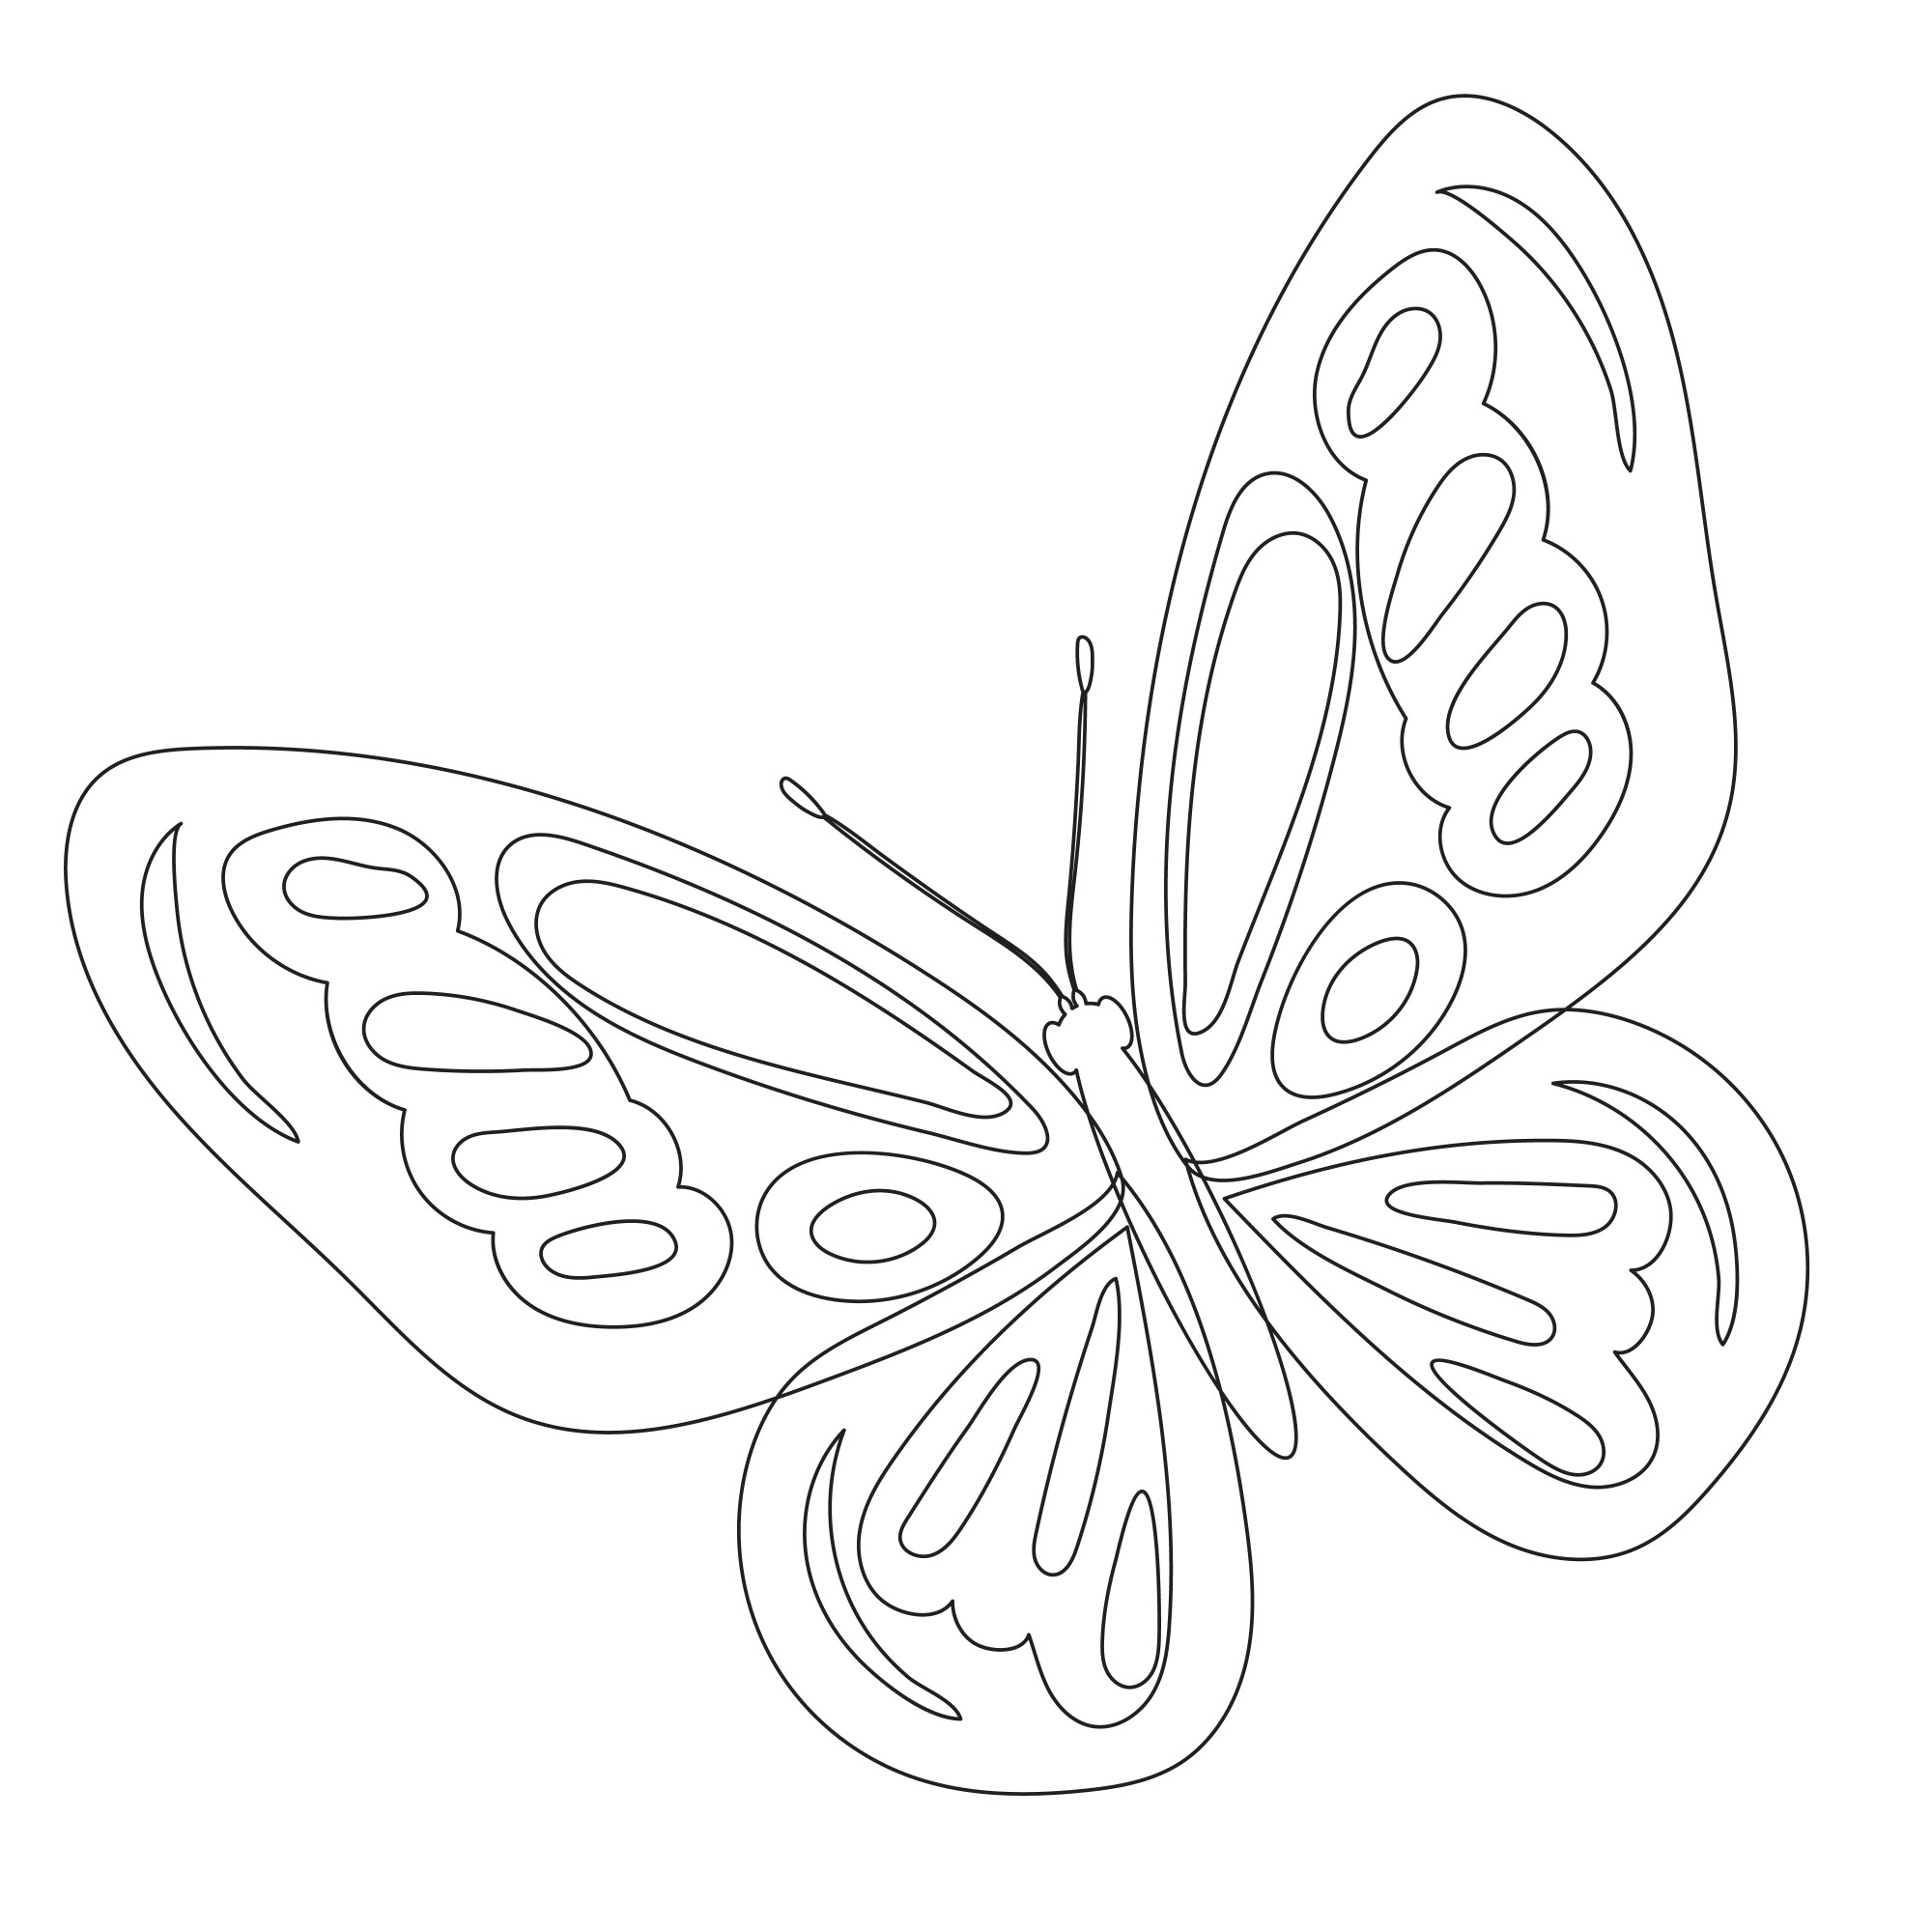 Раскраска для детей: бабочка большая с цветными крыльями